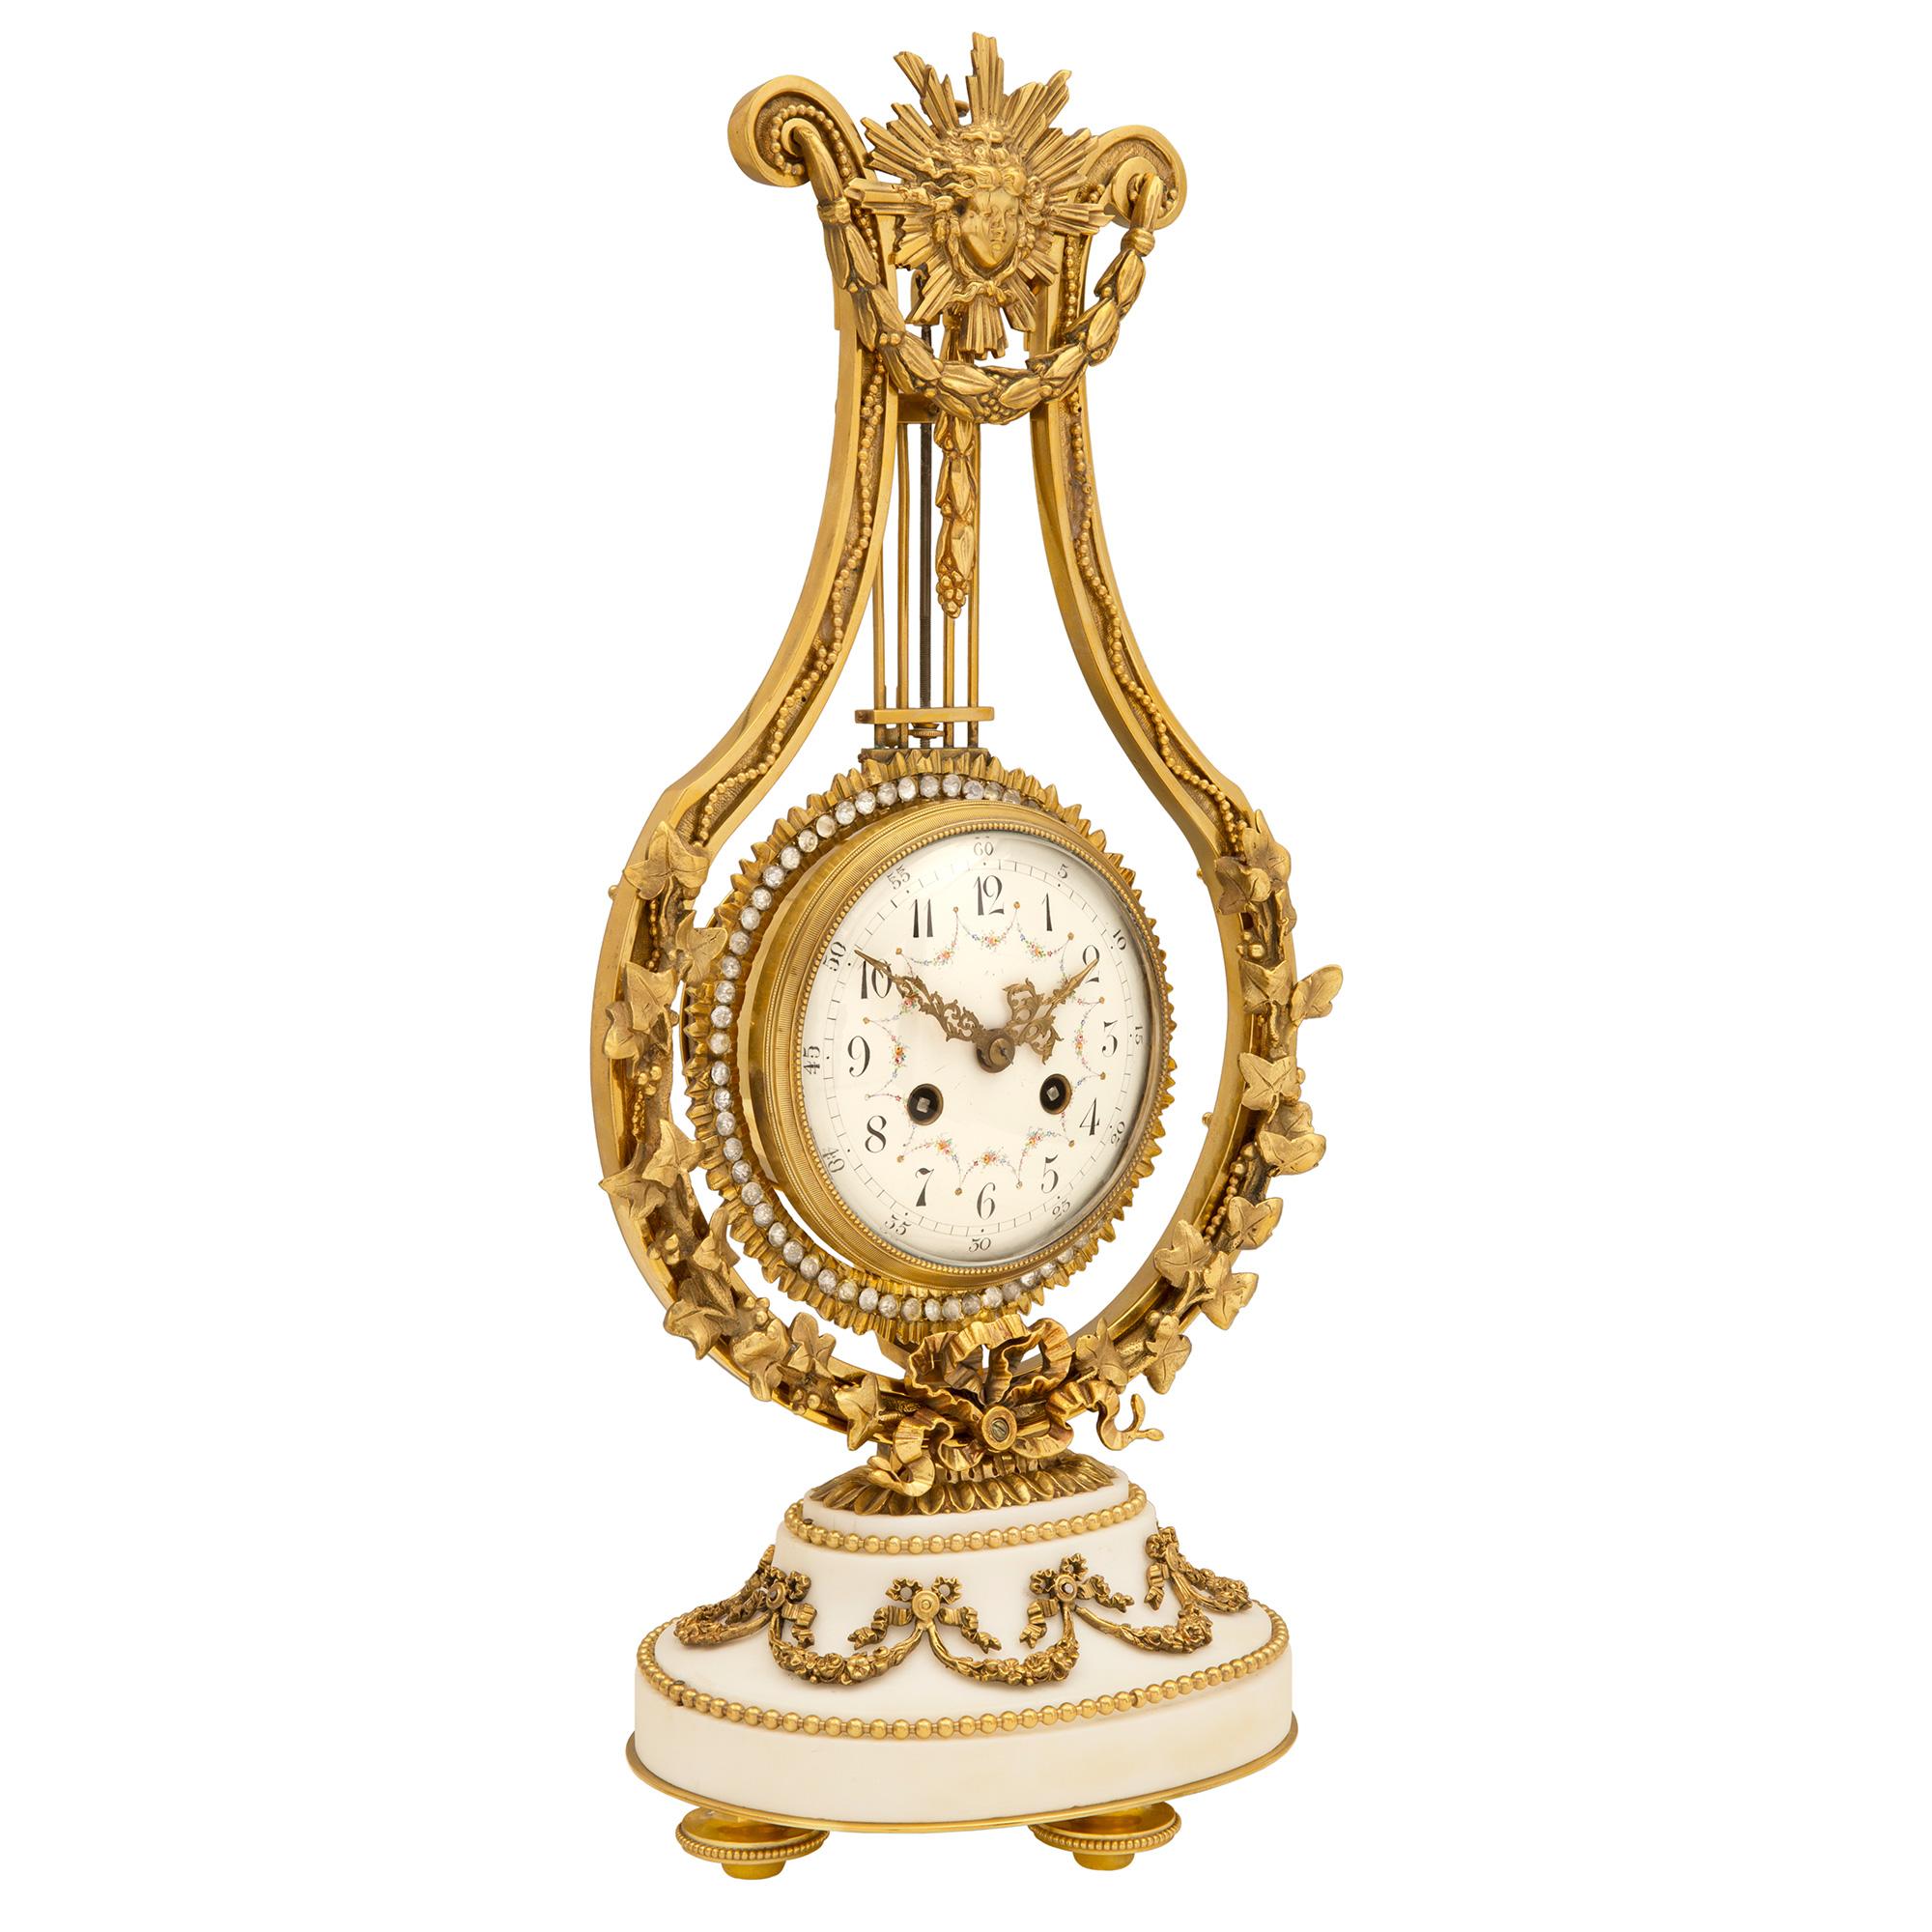 Exquisito reloj francés de mediados del siglo XIX de estilo Luis XVI con ormolina, mármol blanco de Carrara y cristal. El reloj se eleva sobre una base ovalada moldeada de mármol blanco de Carrara, sostenida por patas en forma de topié ricamente